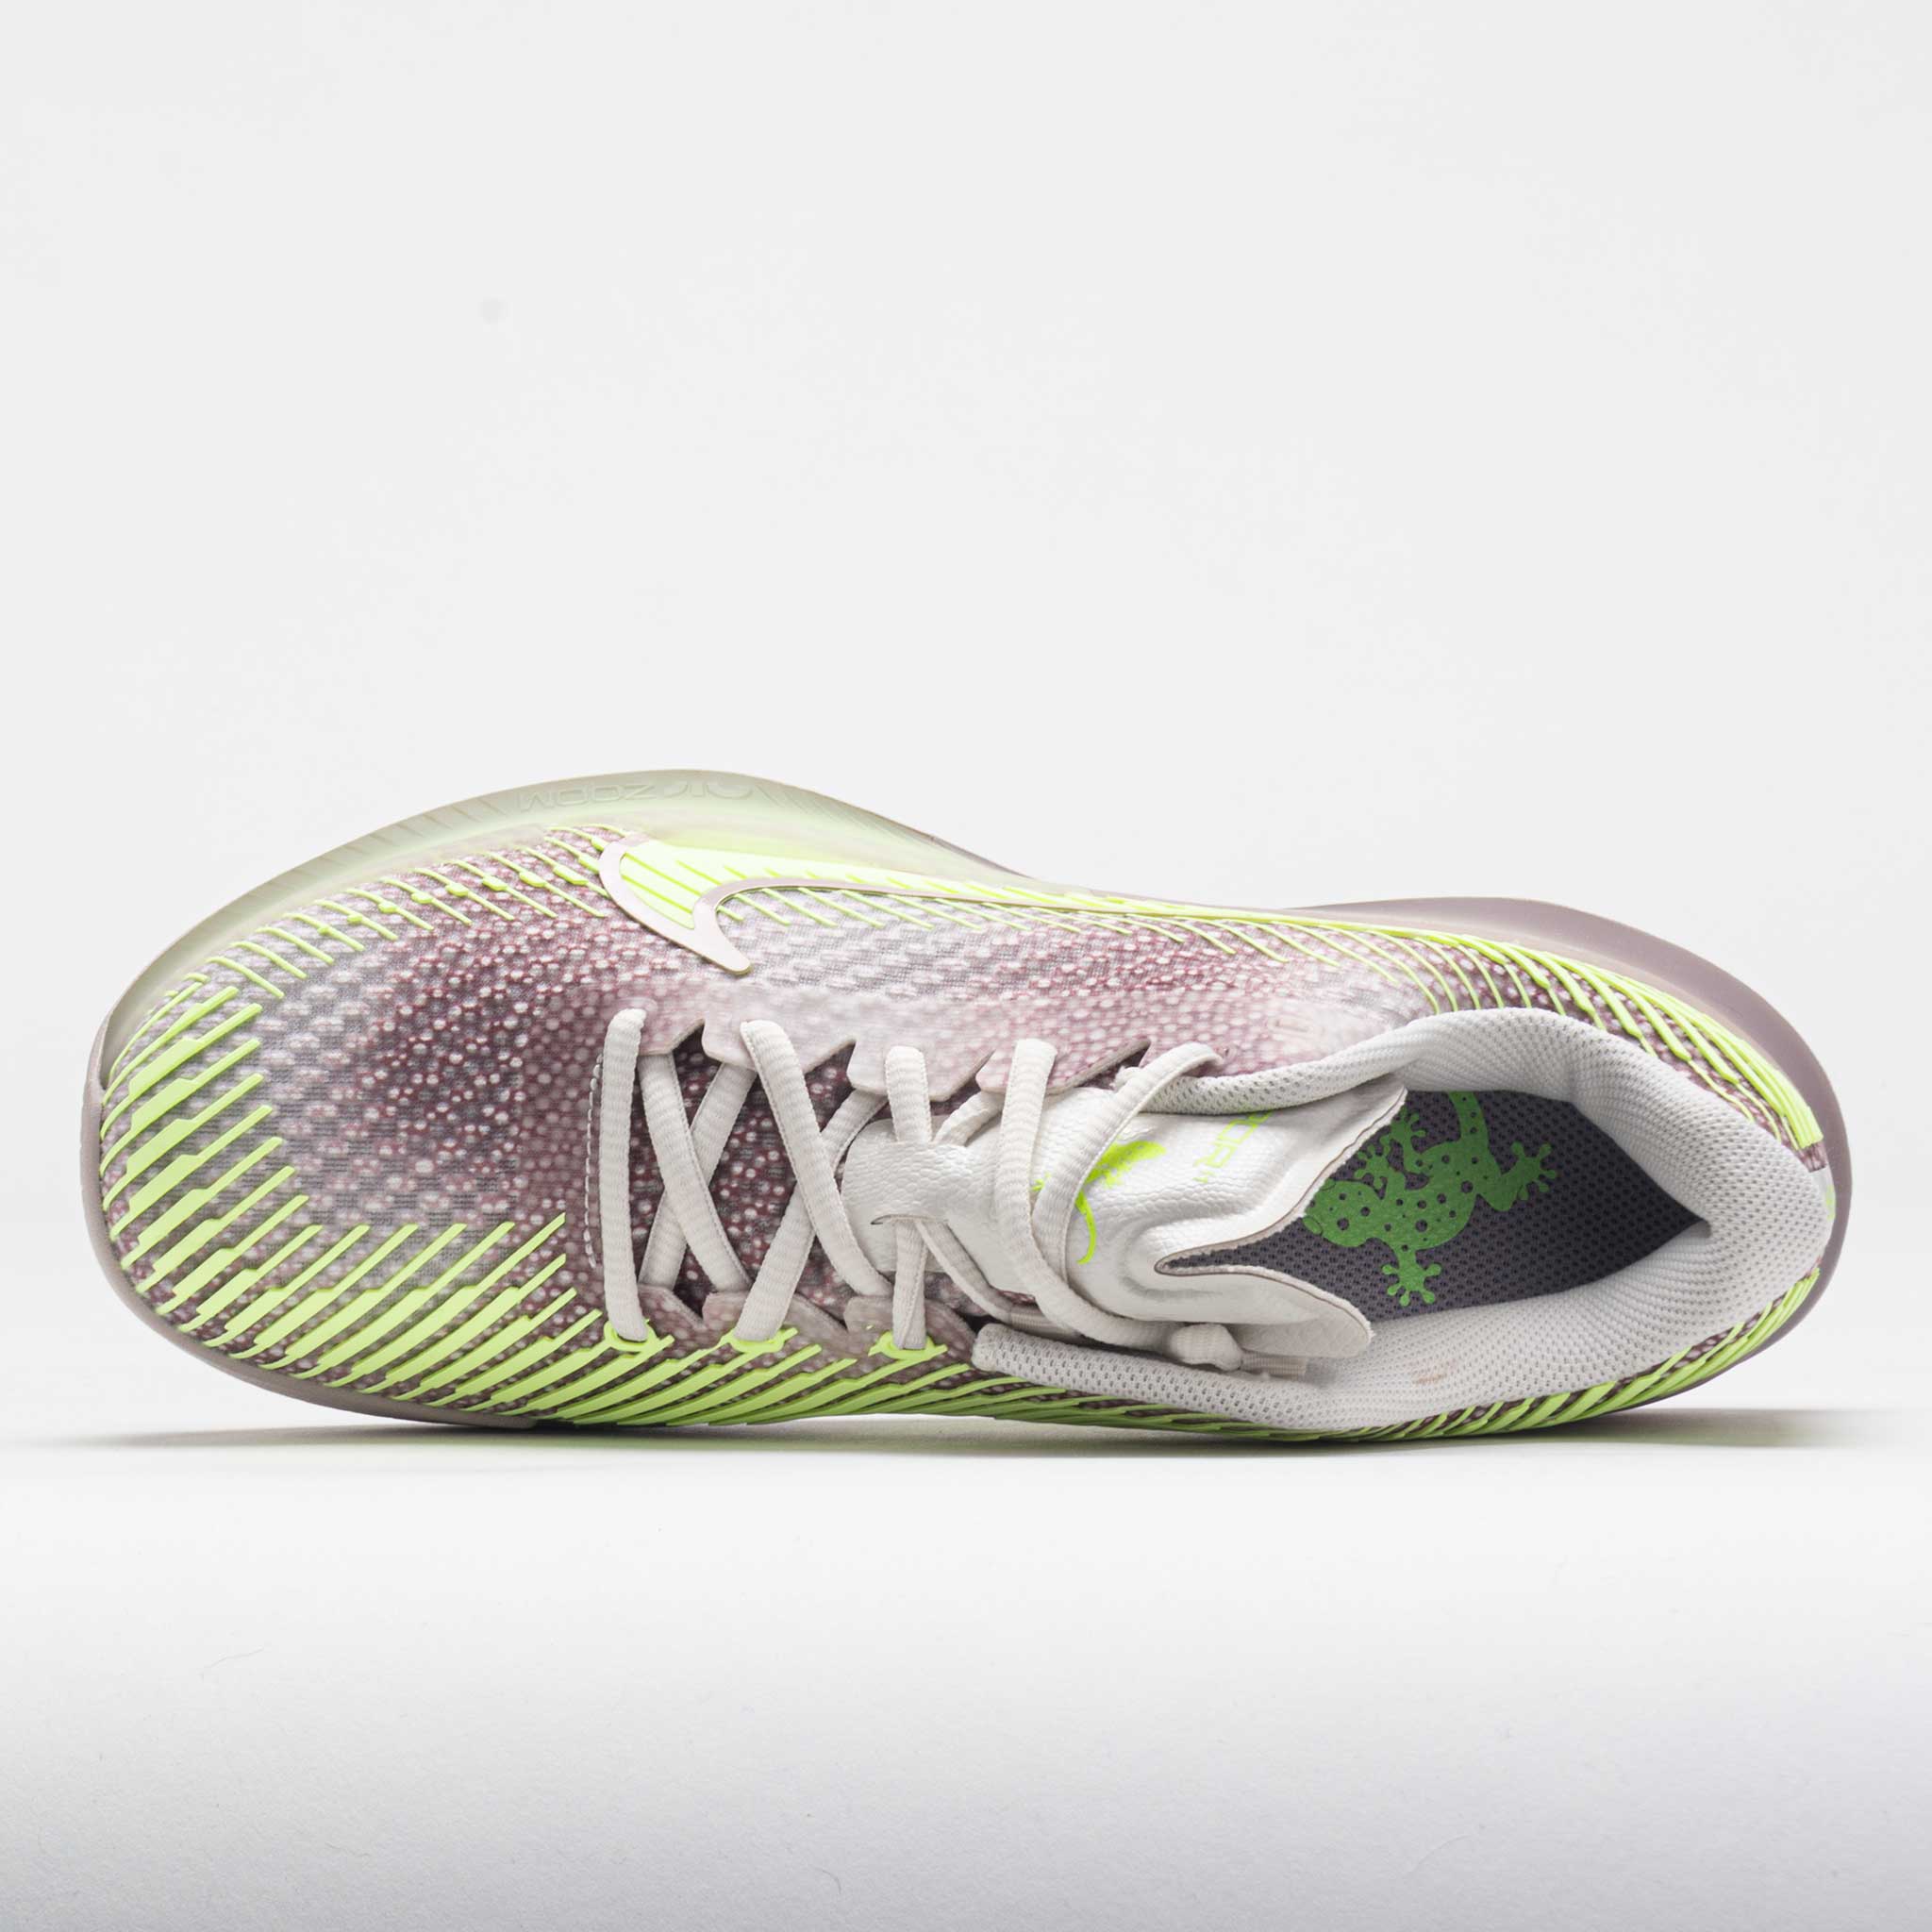 Nike Zoom Vapor 11 Premium Women's Phantom/Barely Volt